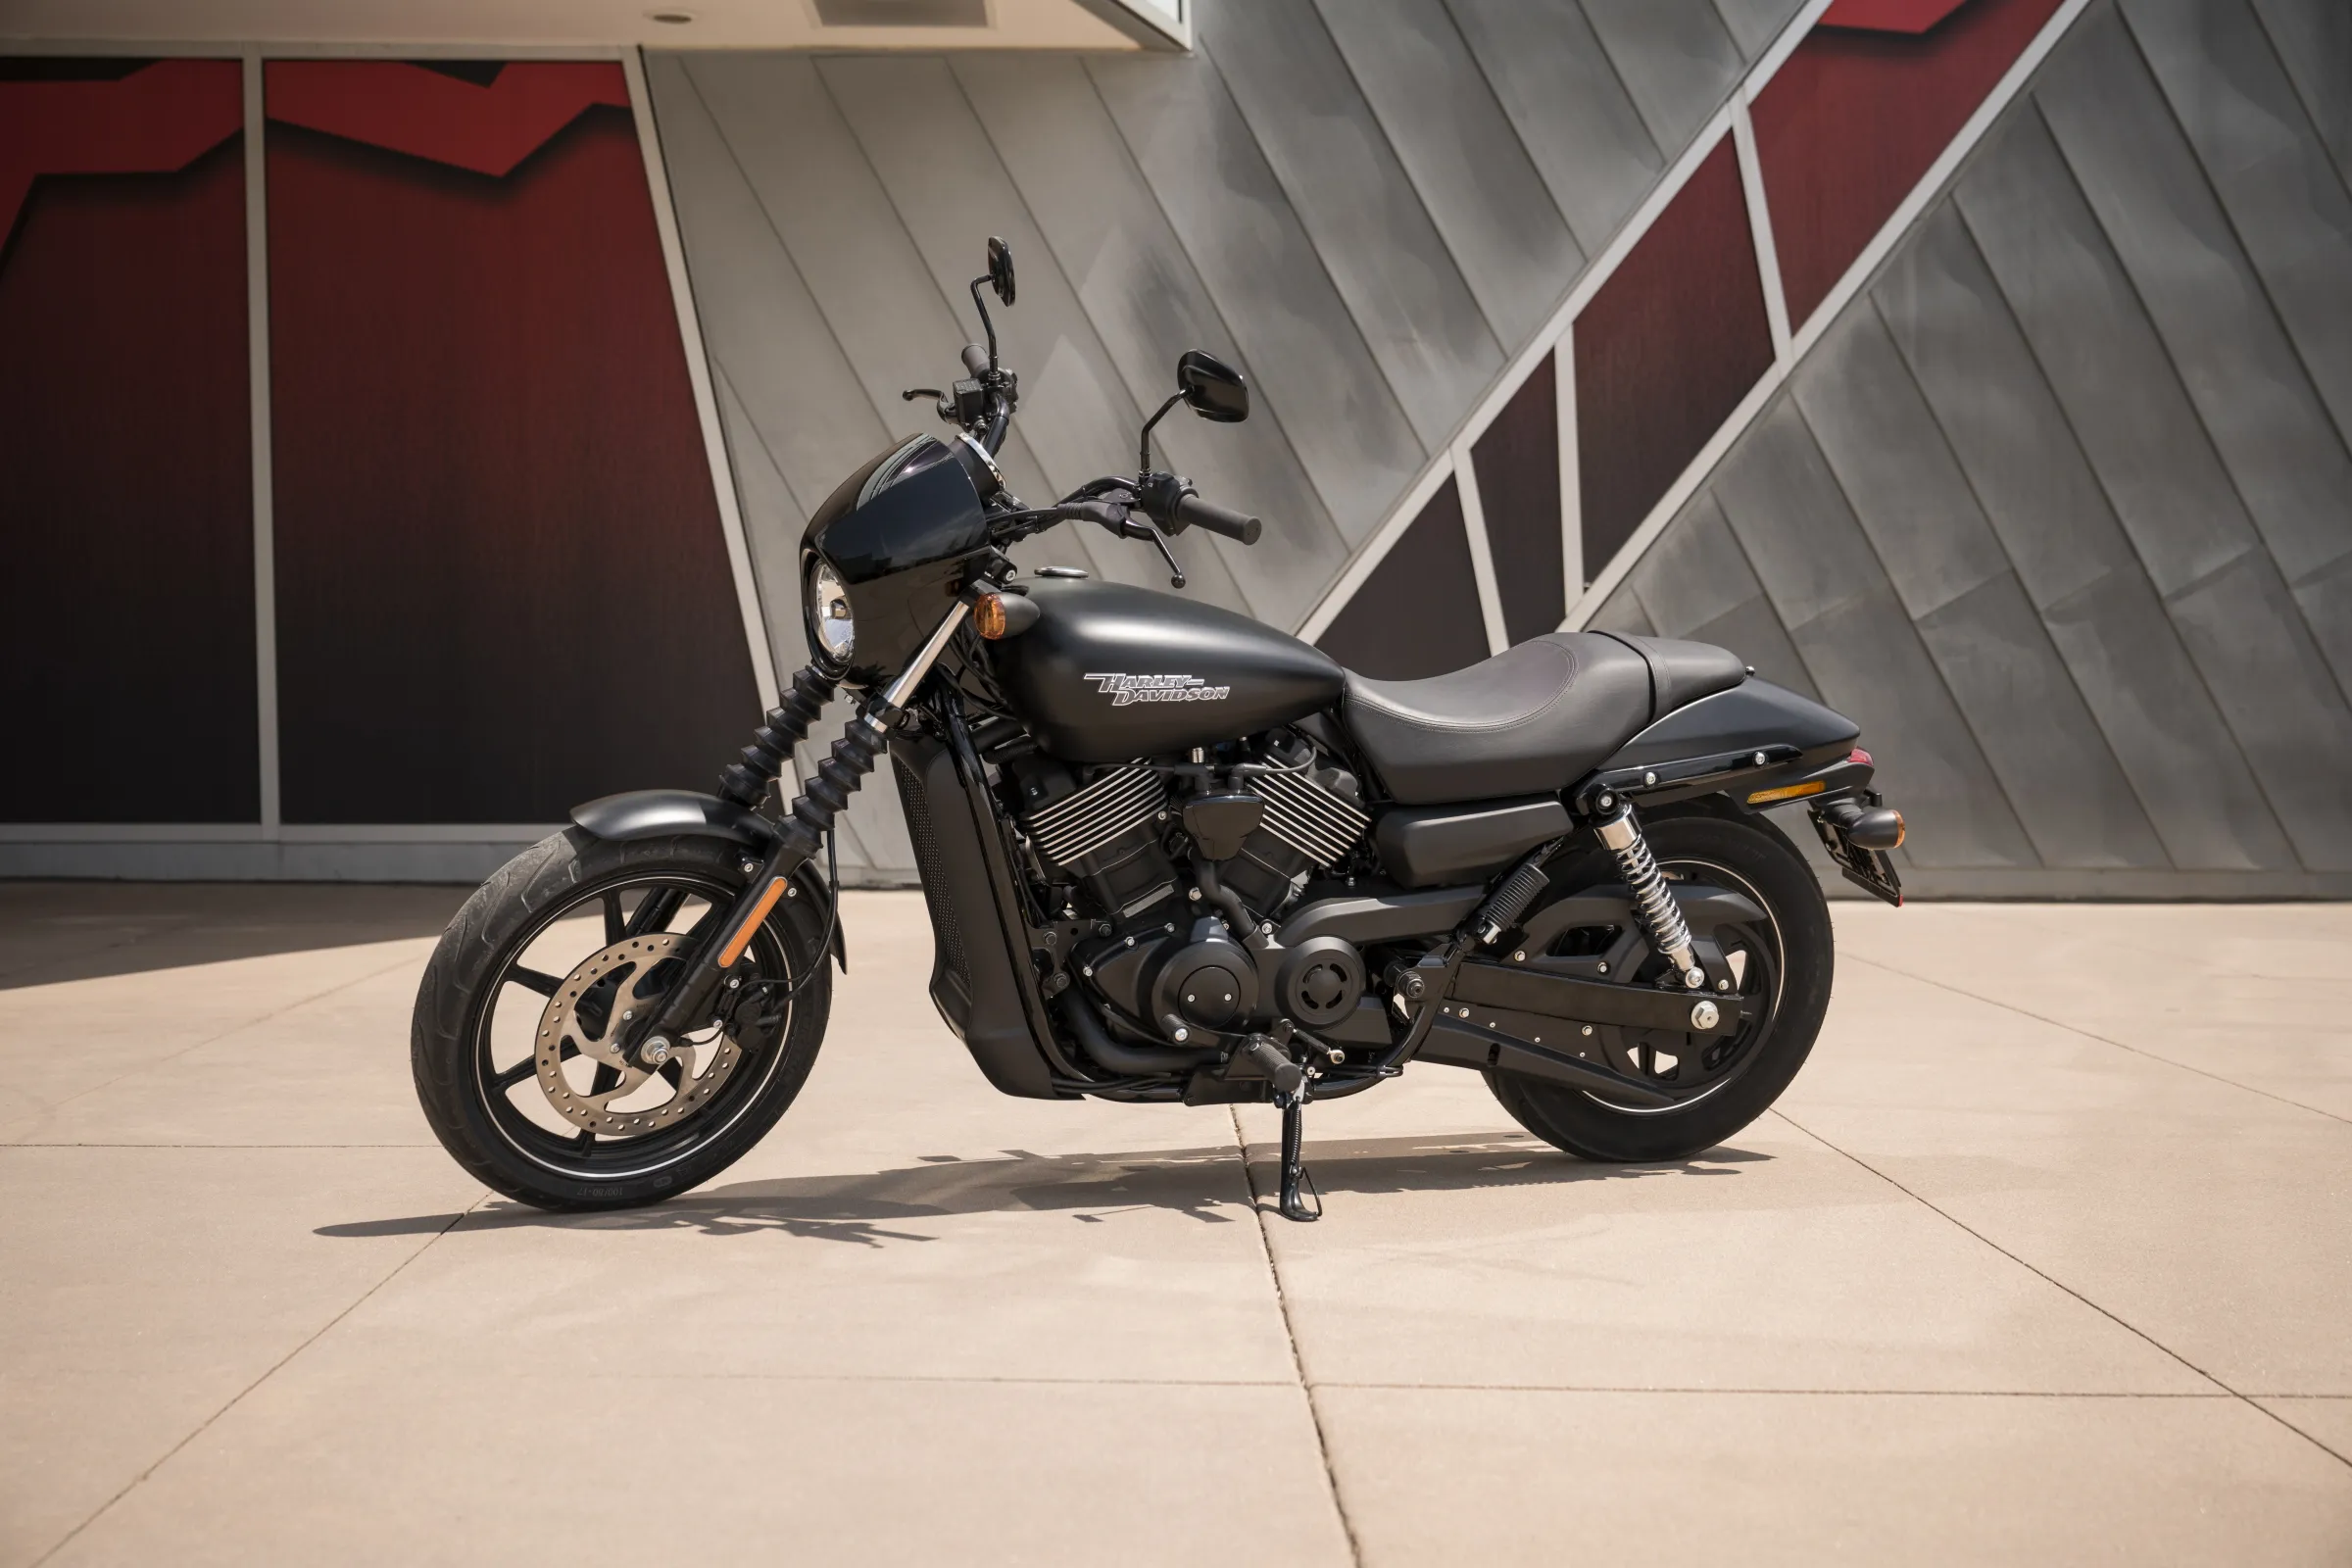 Moto del día: Harley Davidson Street 750